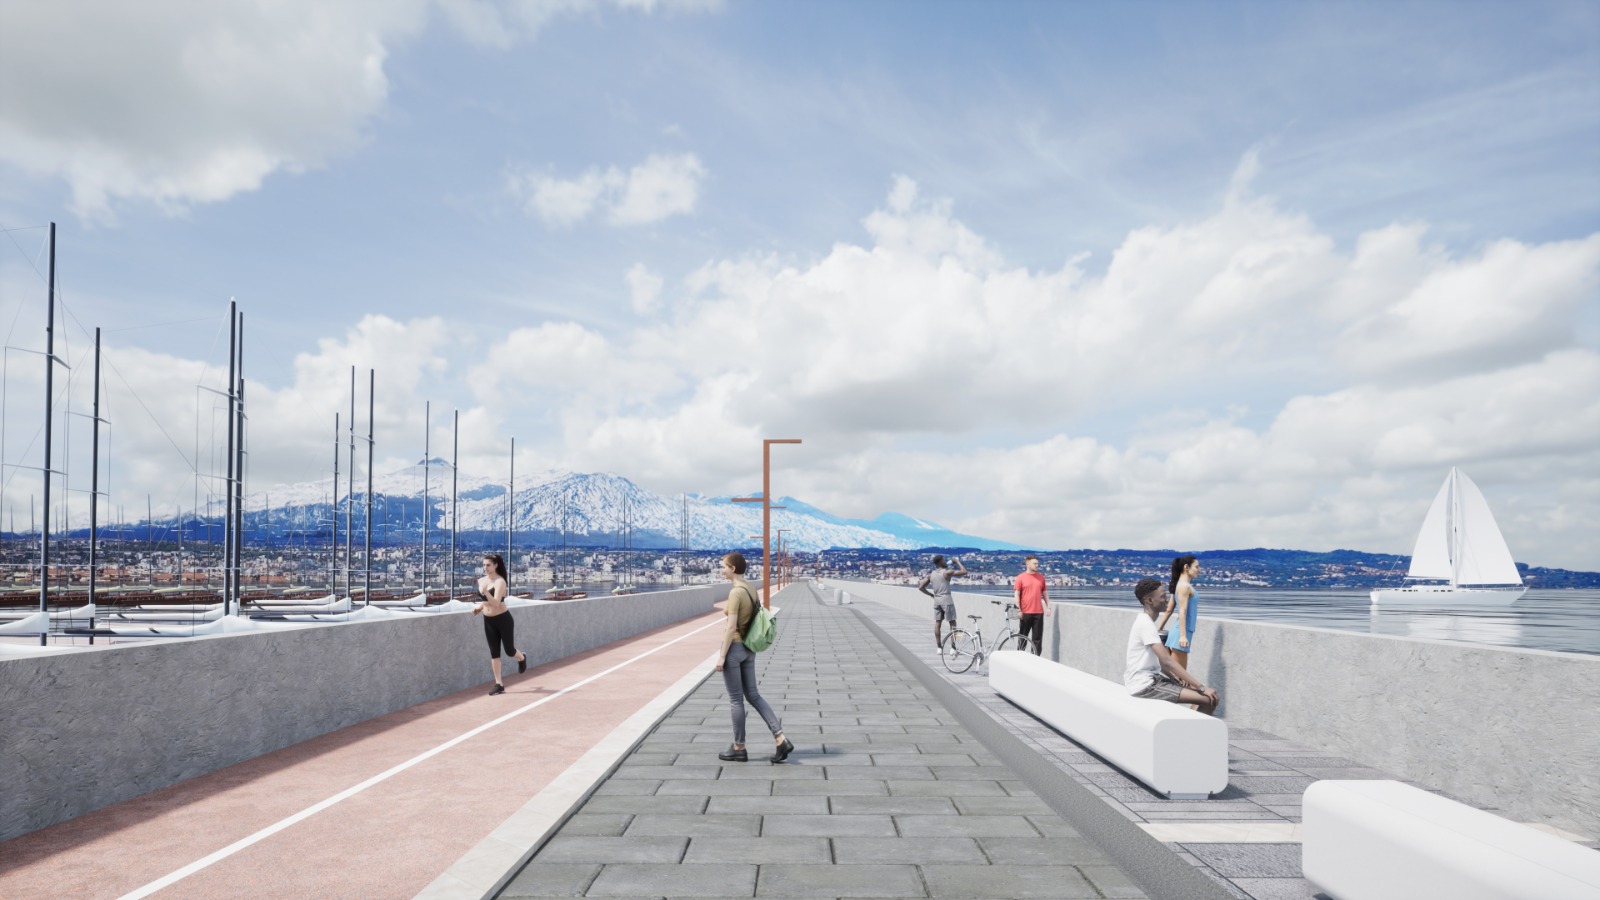 Porto di Catania, 75 milioni di euro per la diga foranea:  al via messa in sicurezza e nuova passeggiata